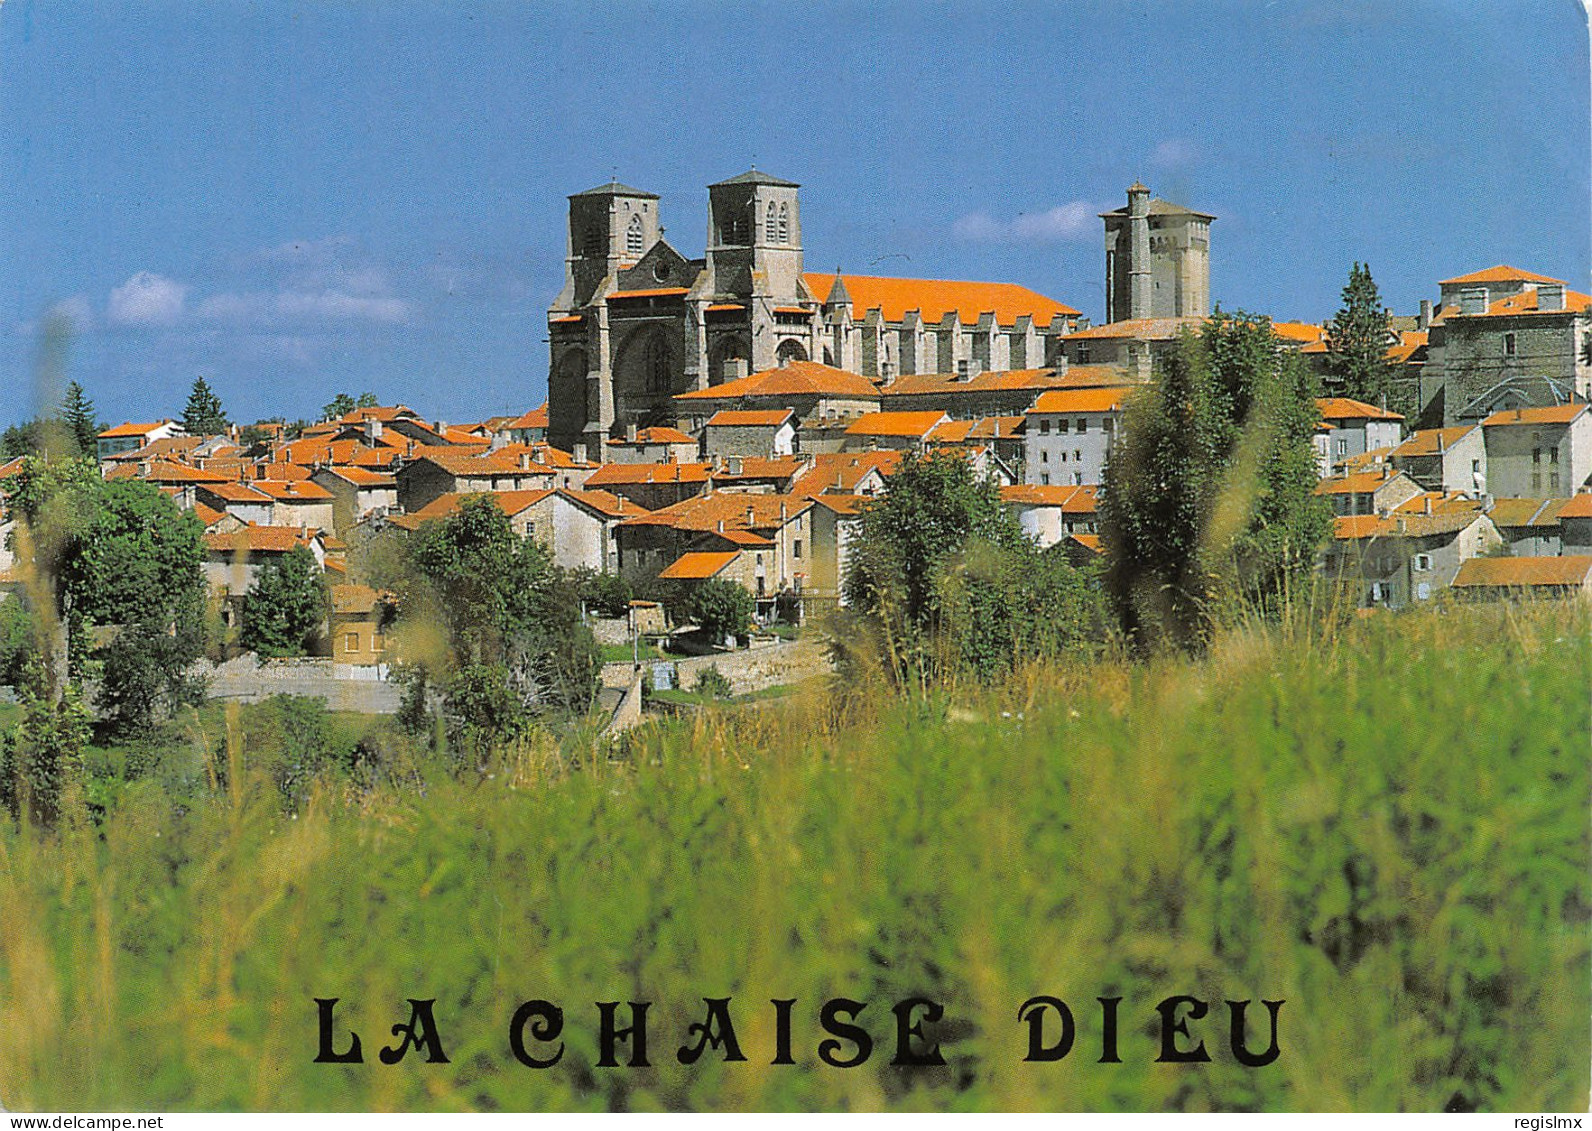 43-LA CHAISE DIEU-N°T2664-C/0377 - La Chaise Dieu